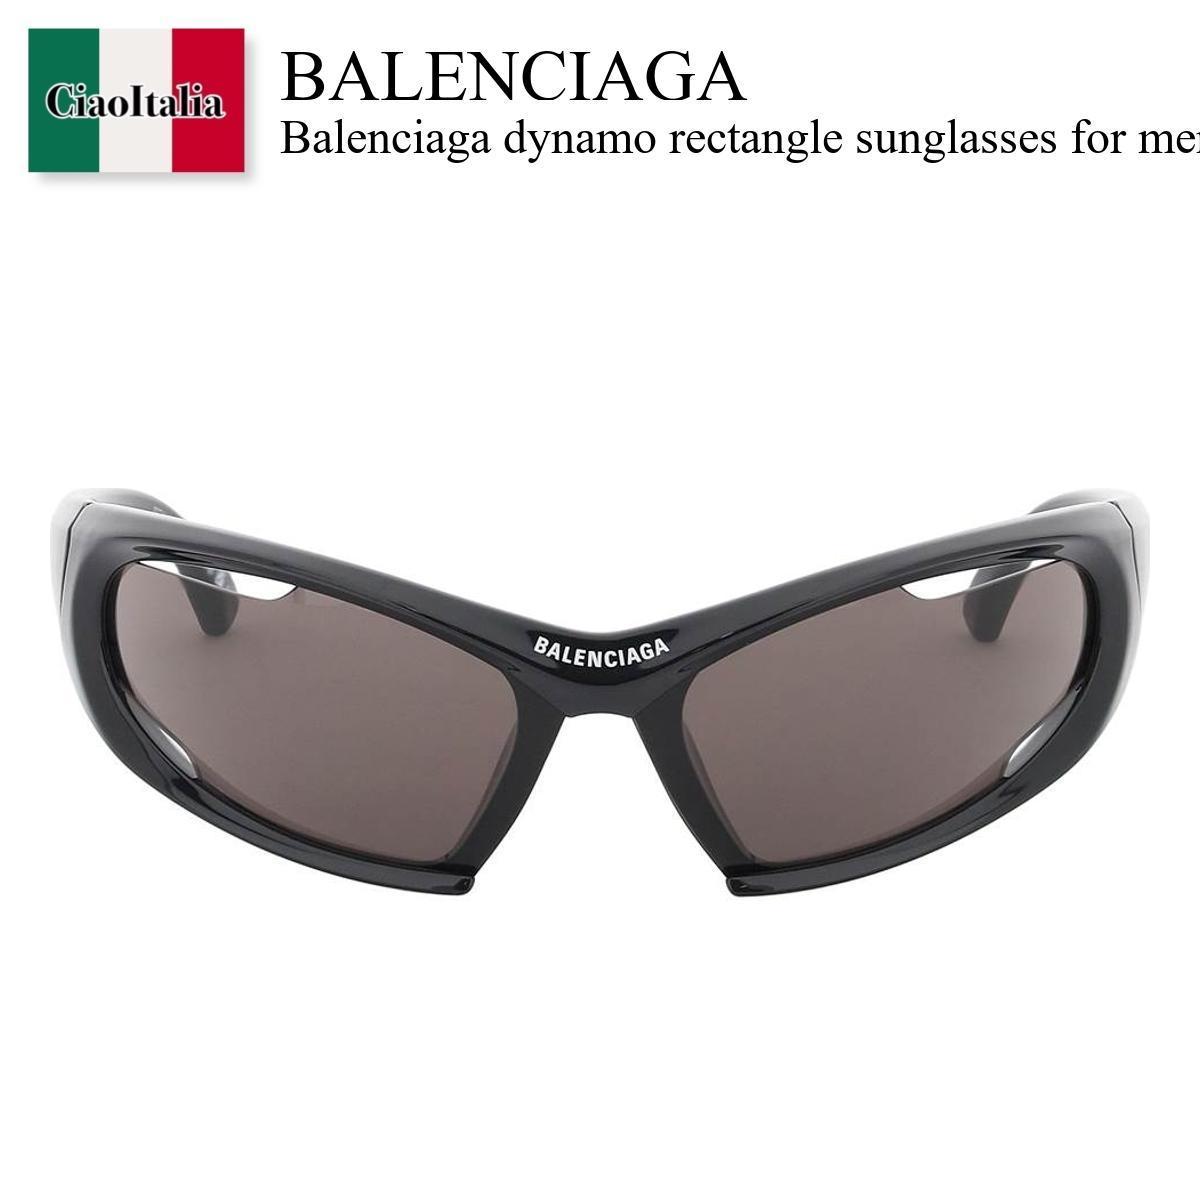 バレンシアガ サングラス レディース バレンシアガ / Balenciaga Dynamo Rectangle Sunglasses / 773389 T0007 / 773389 T0007 1000 / 773389T00071000 / 773389T0007 / サングラス / 「正規品補償」「VIP価格販売」「お買い物サポート」